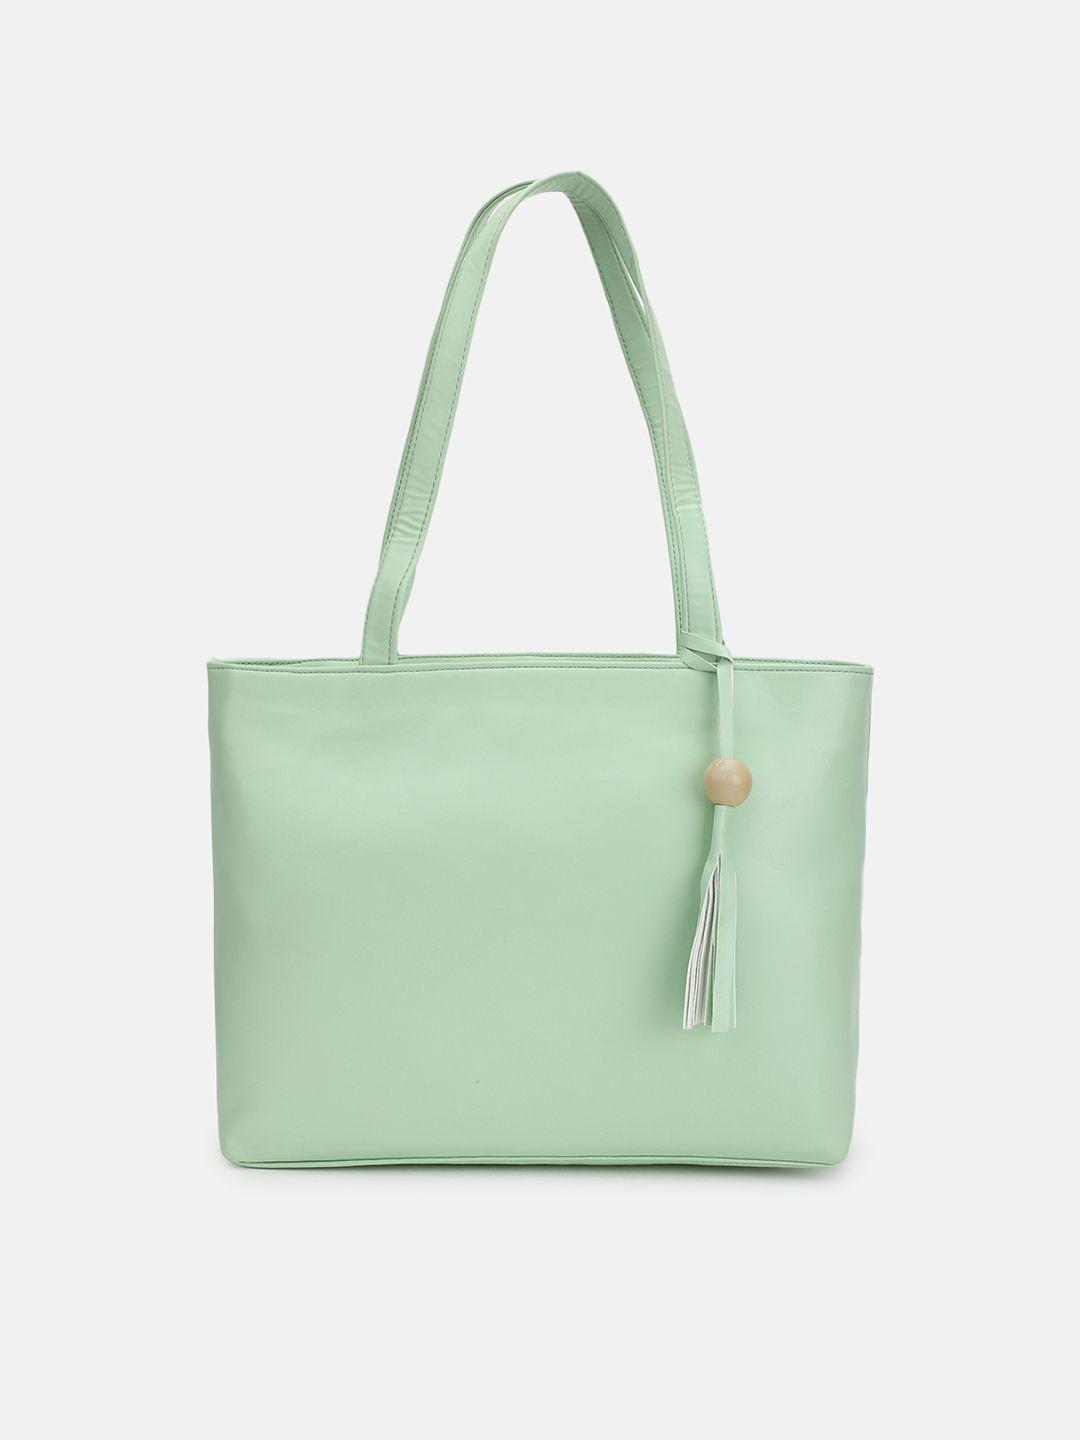 fabbhue olive green pu shopper shoulder bag with tasselled